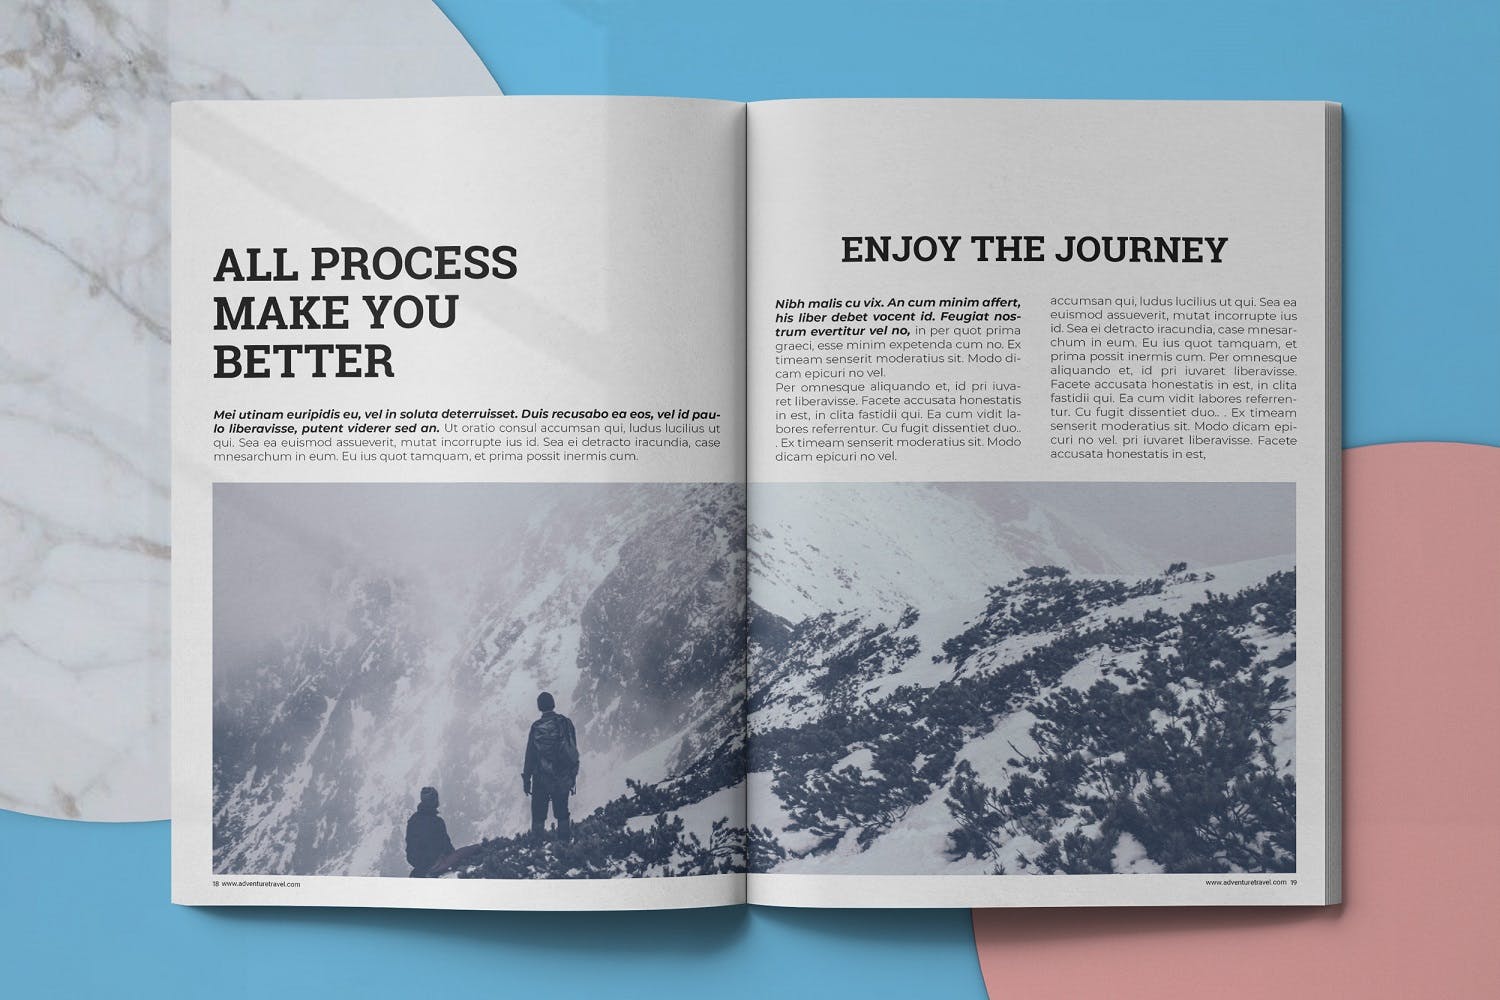 冒险旅行主题素材库精选杂志排版设计模板 Adventure Travel Magazine Template插图(9)